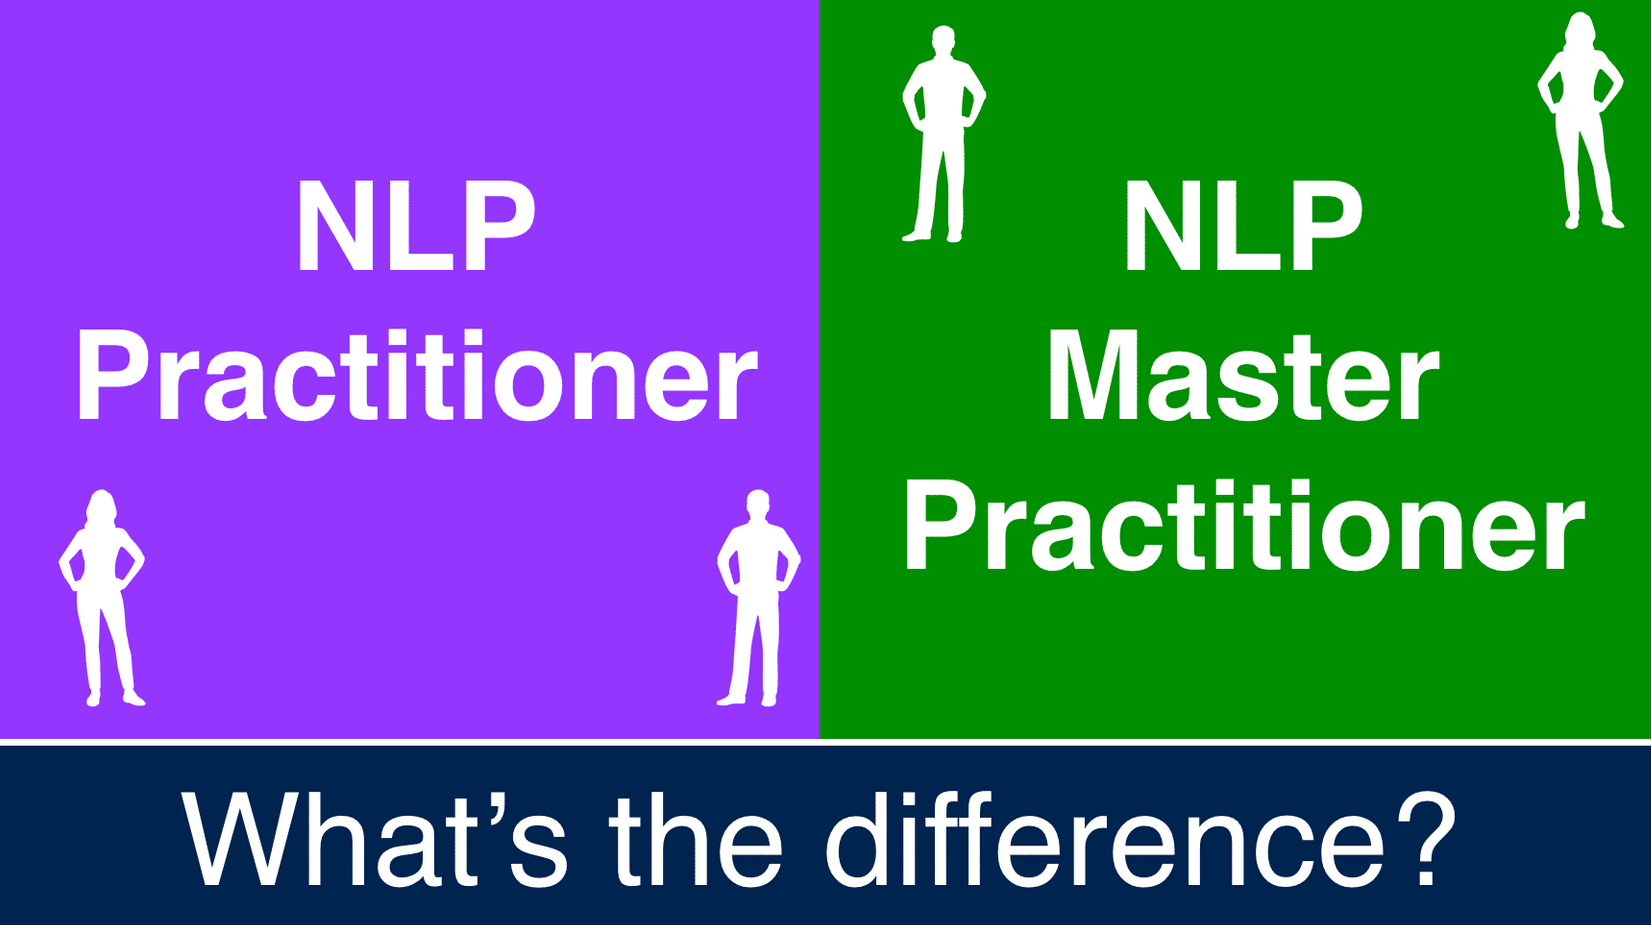 Dr. William Horton - NLP Master practitioner